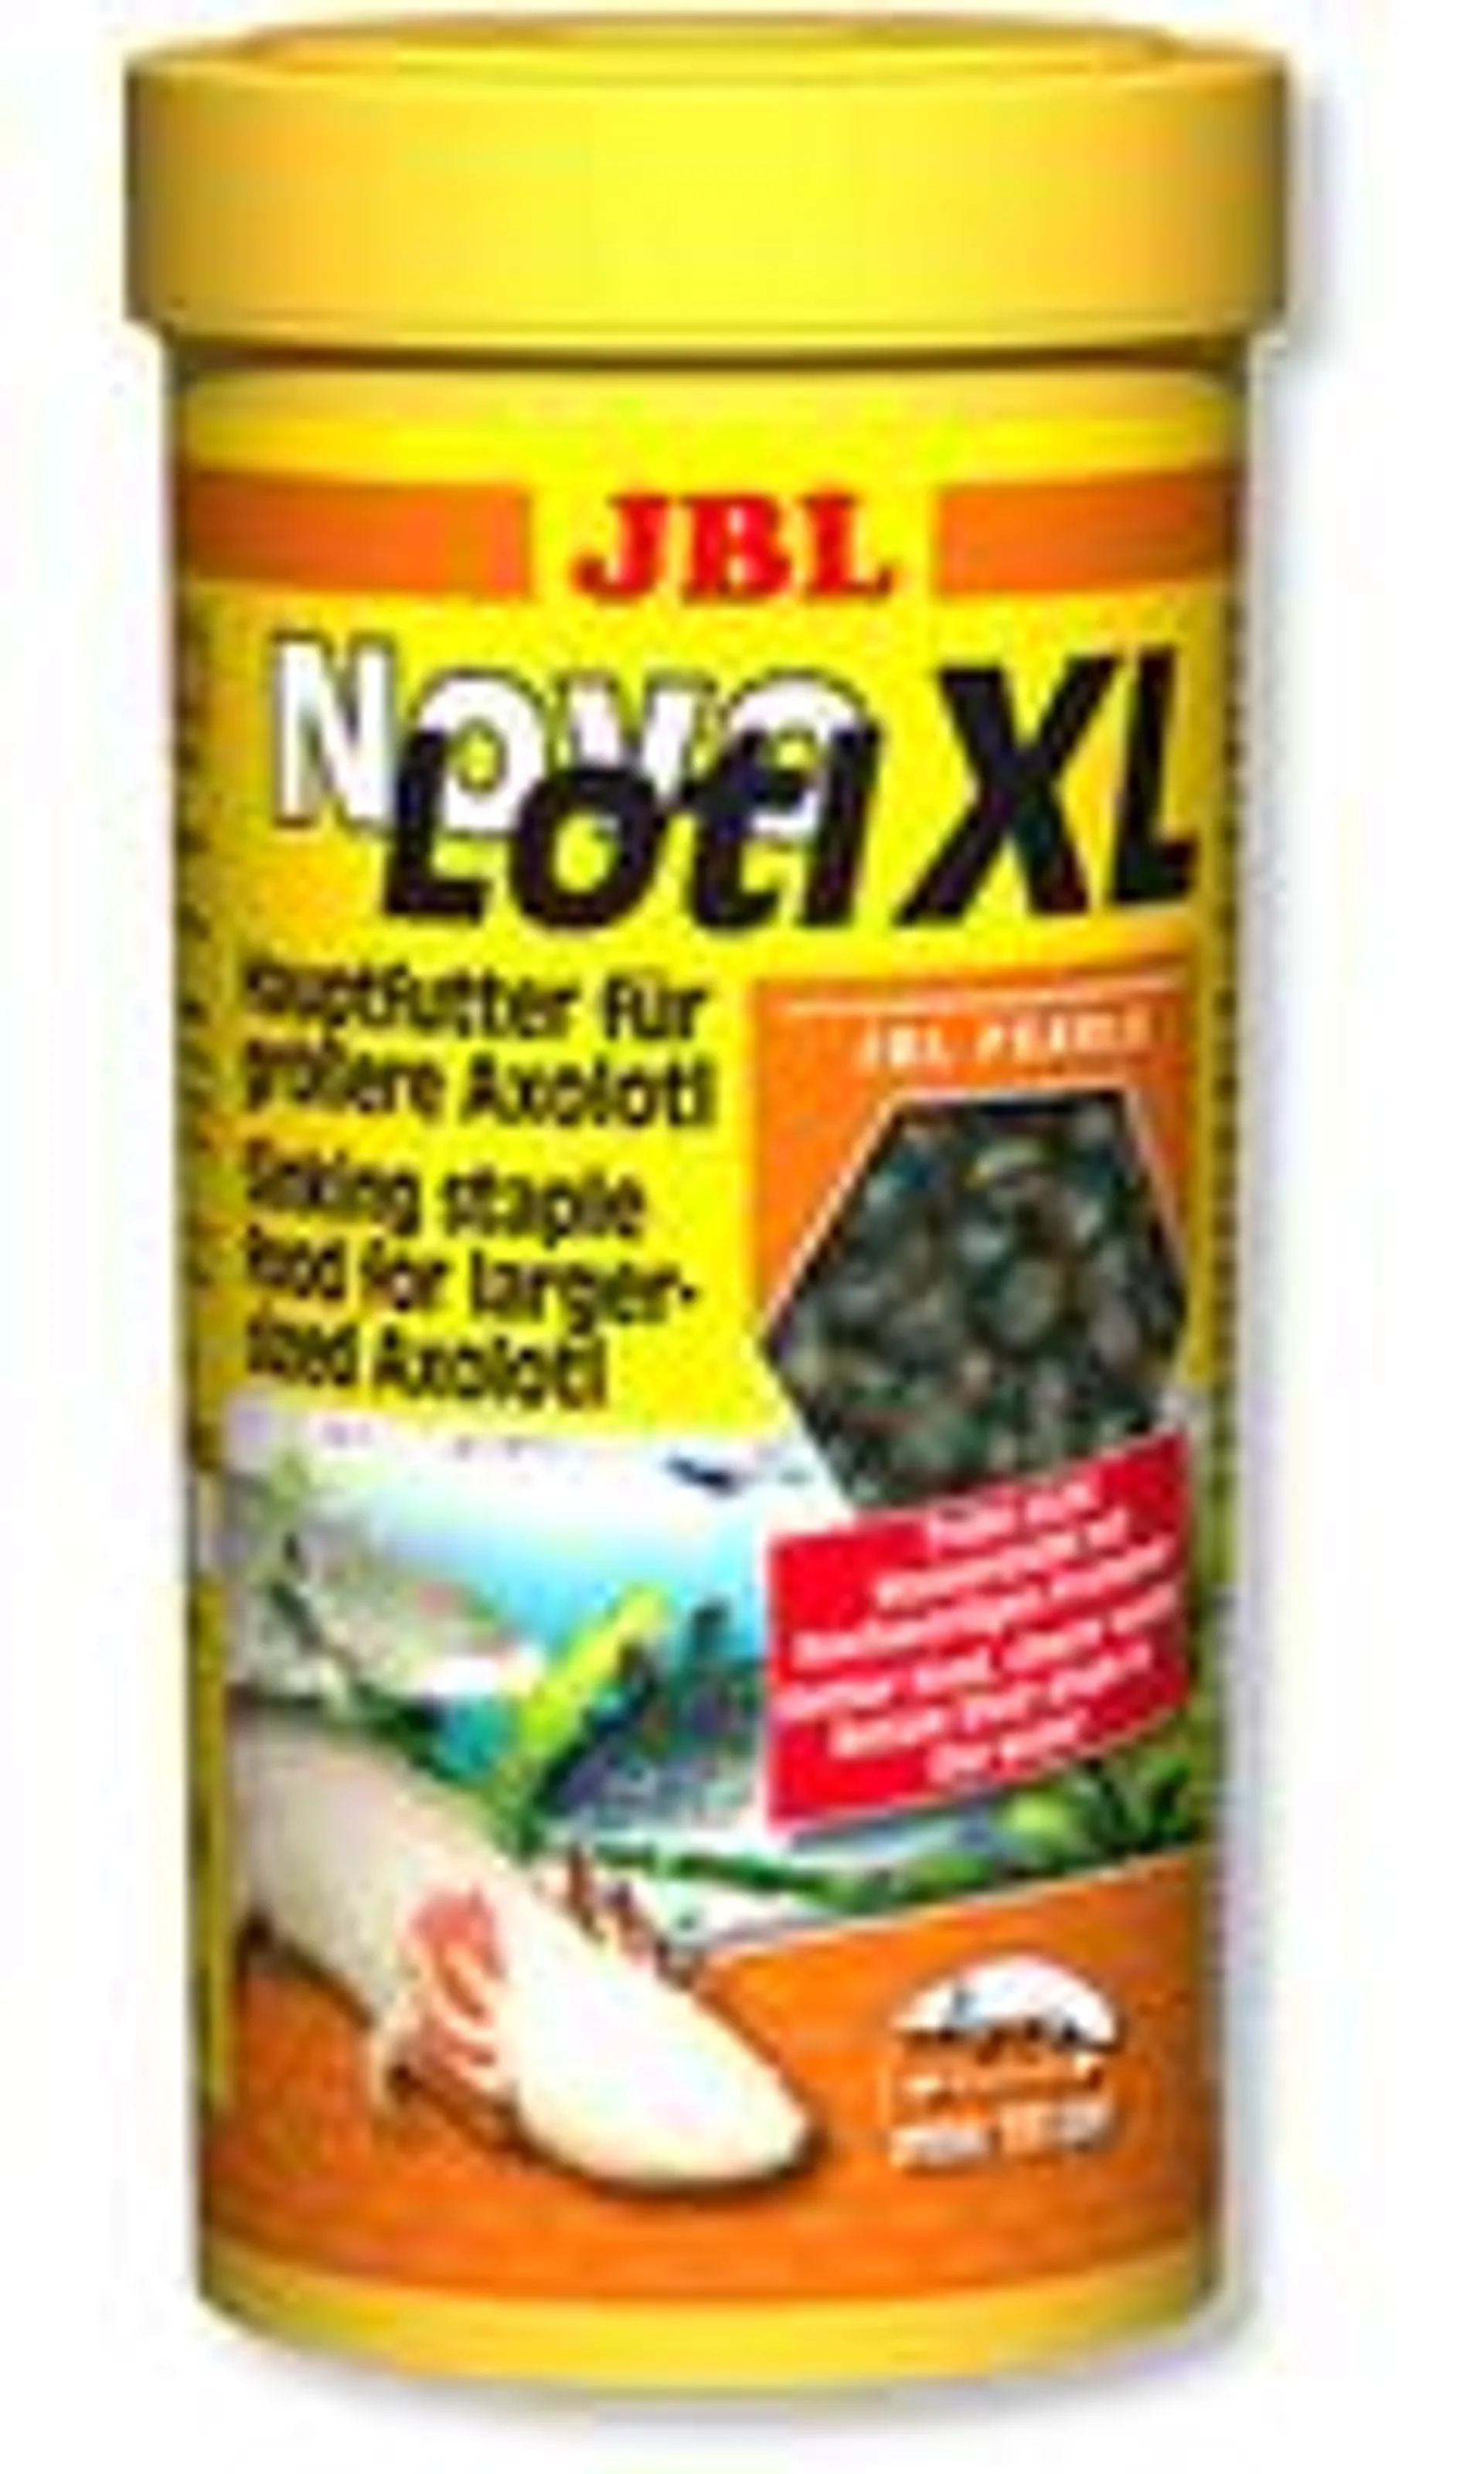 JBL Novolotl XL*